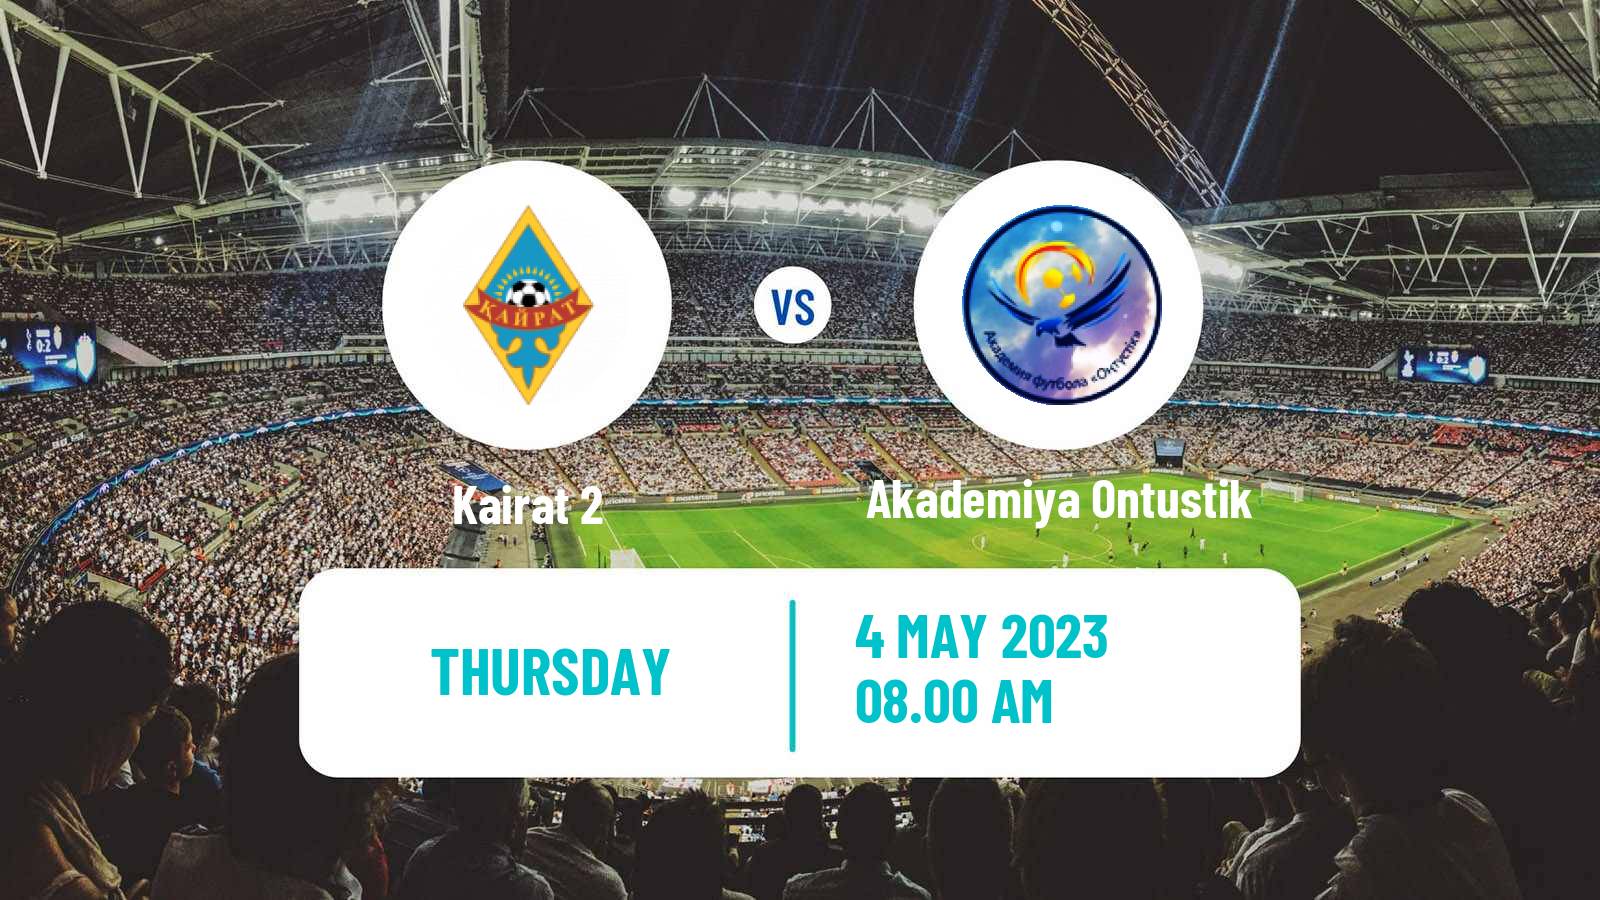 Soccer Kazakh First Division Kairat 2 - Akademiya Ontustik